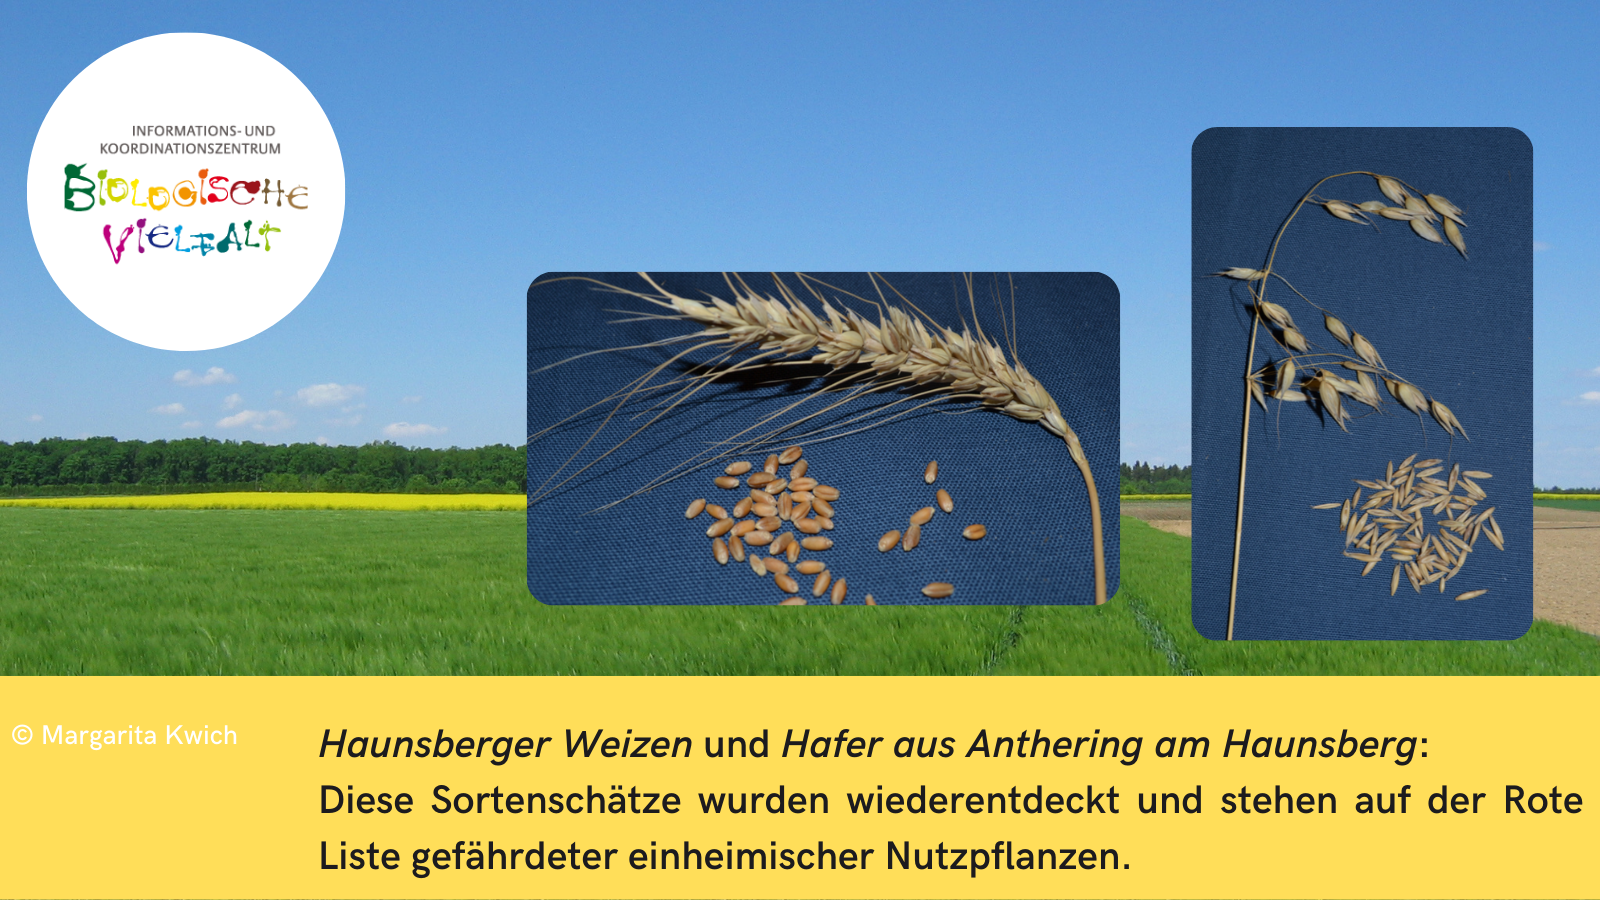 Vor dem Hintergrund einer Agrarlandschaft mt einem grünen Getreidefeld heben sich zwei Fotos ab: Vor einem blauen Hintergrund sind jeweils eine Ähre und Körner von Weizen und Hafer abgebildet